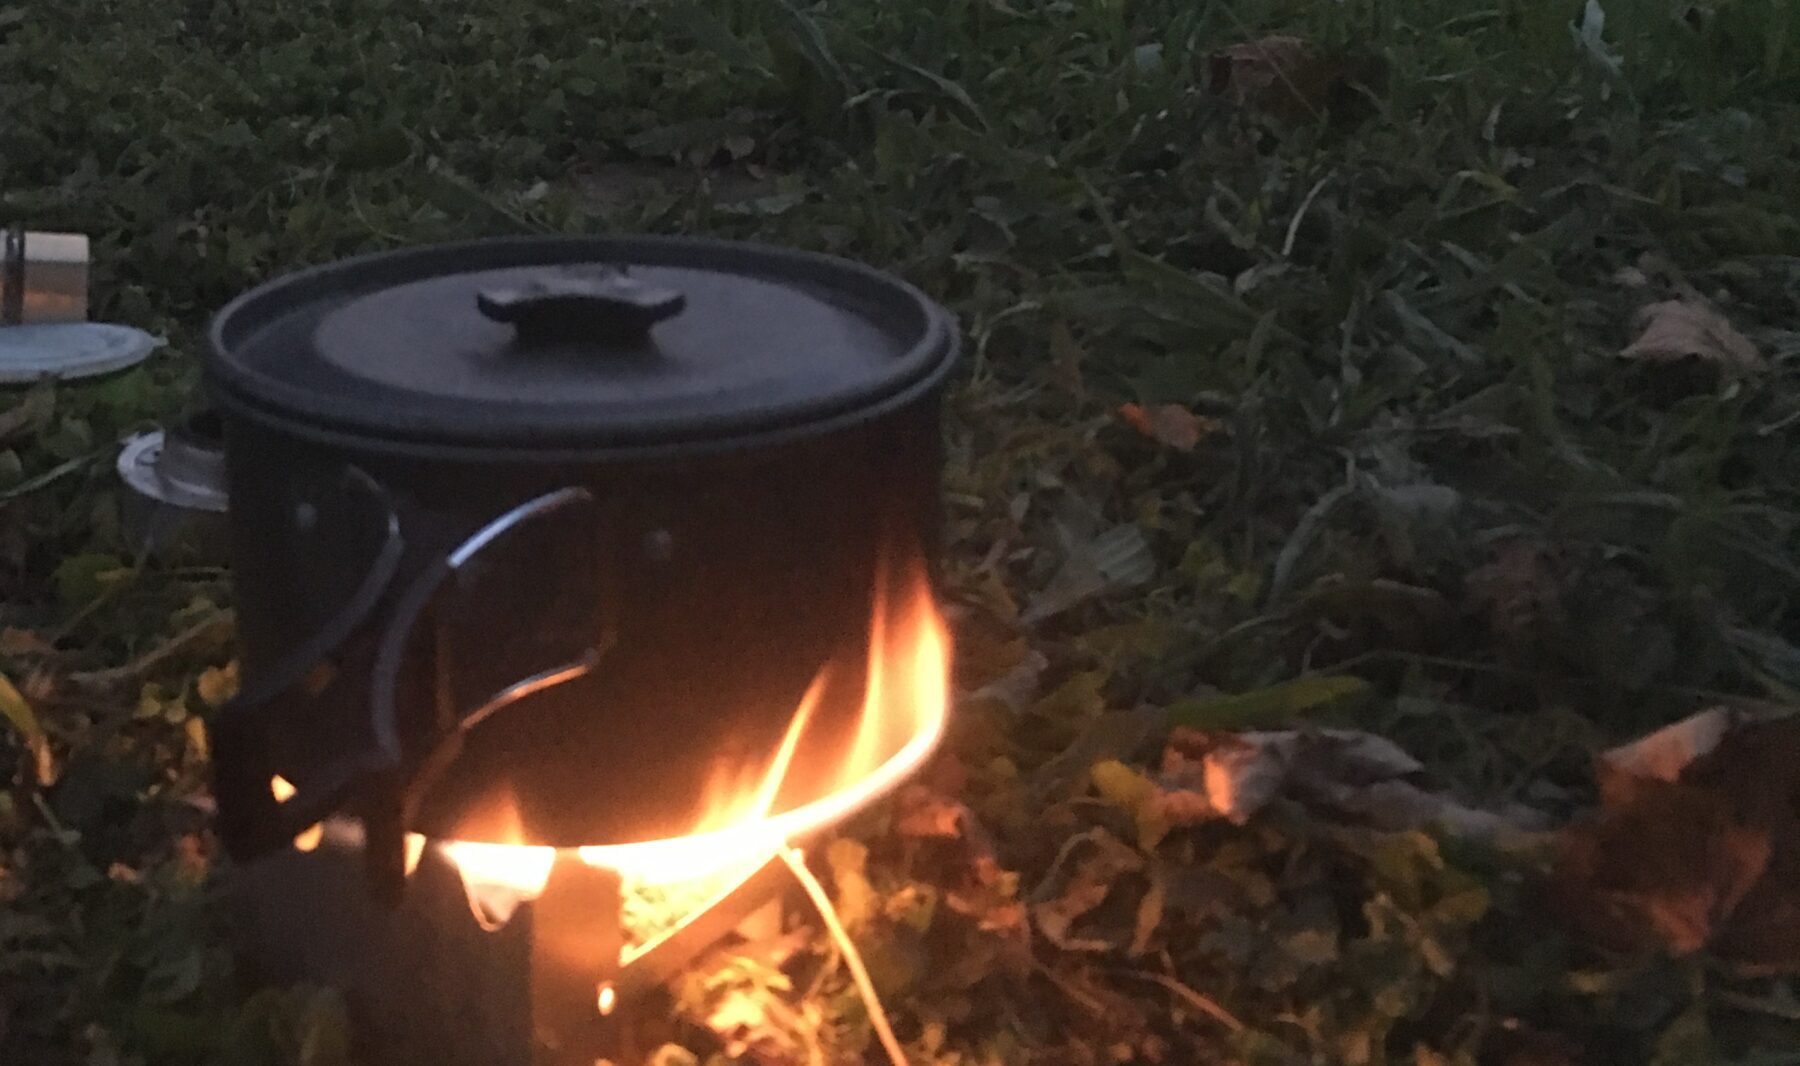 Koken op een spontane trektocht met een pan op een vuurtje